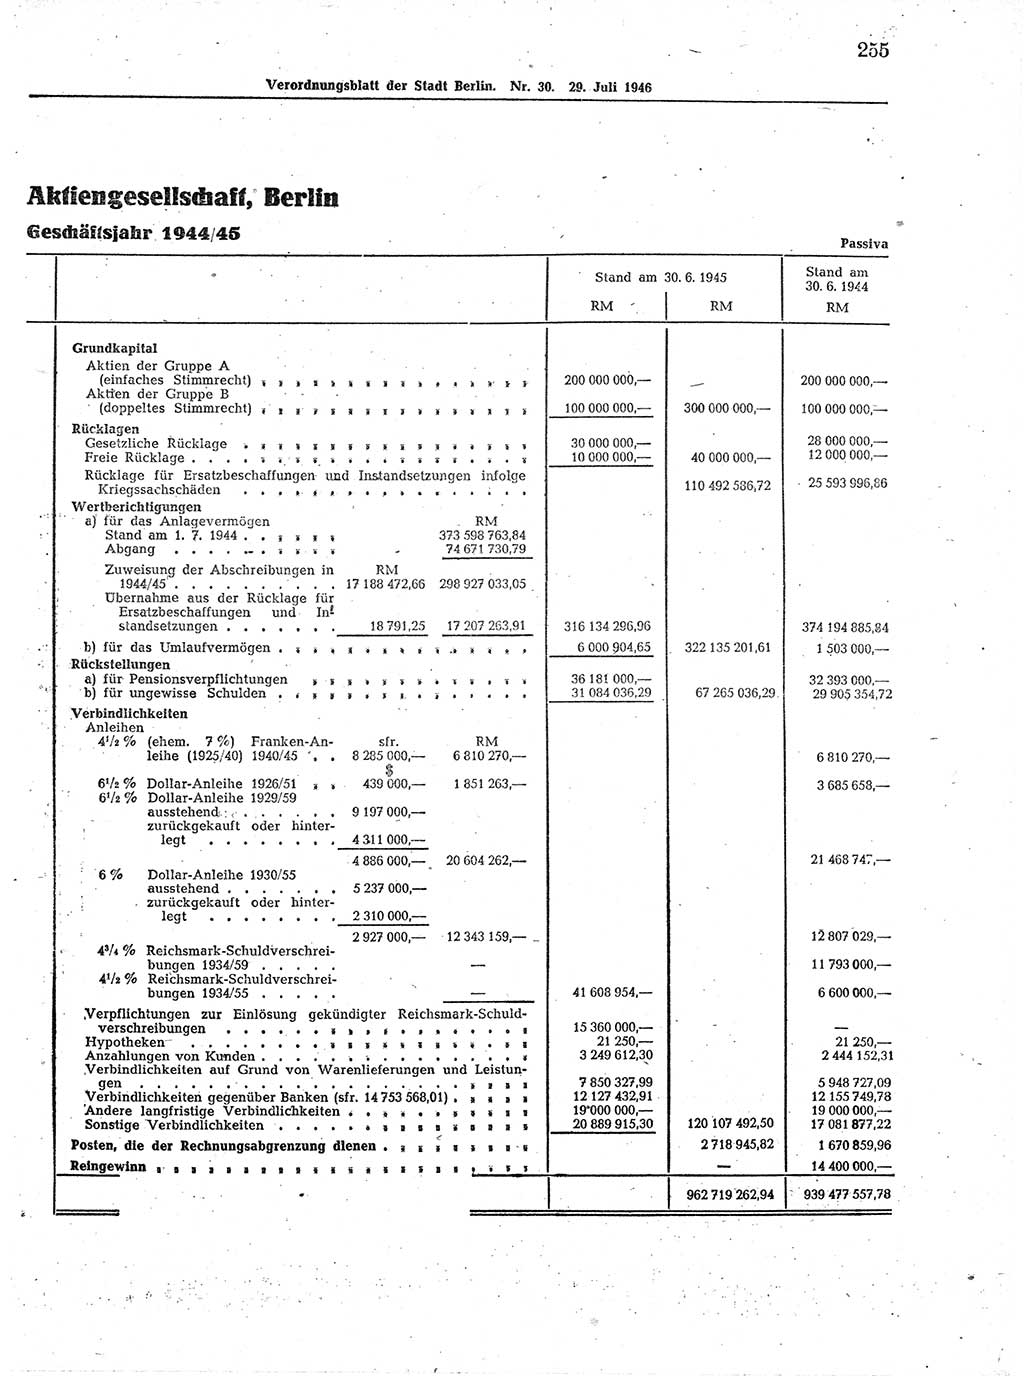 Verordnungsblatt (VOBl.) der Stadt Berlin, für Groß-Berlin 1946, Seite 255 (VOBl. Bln. 1946, S. 255)